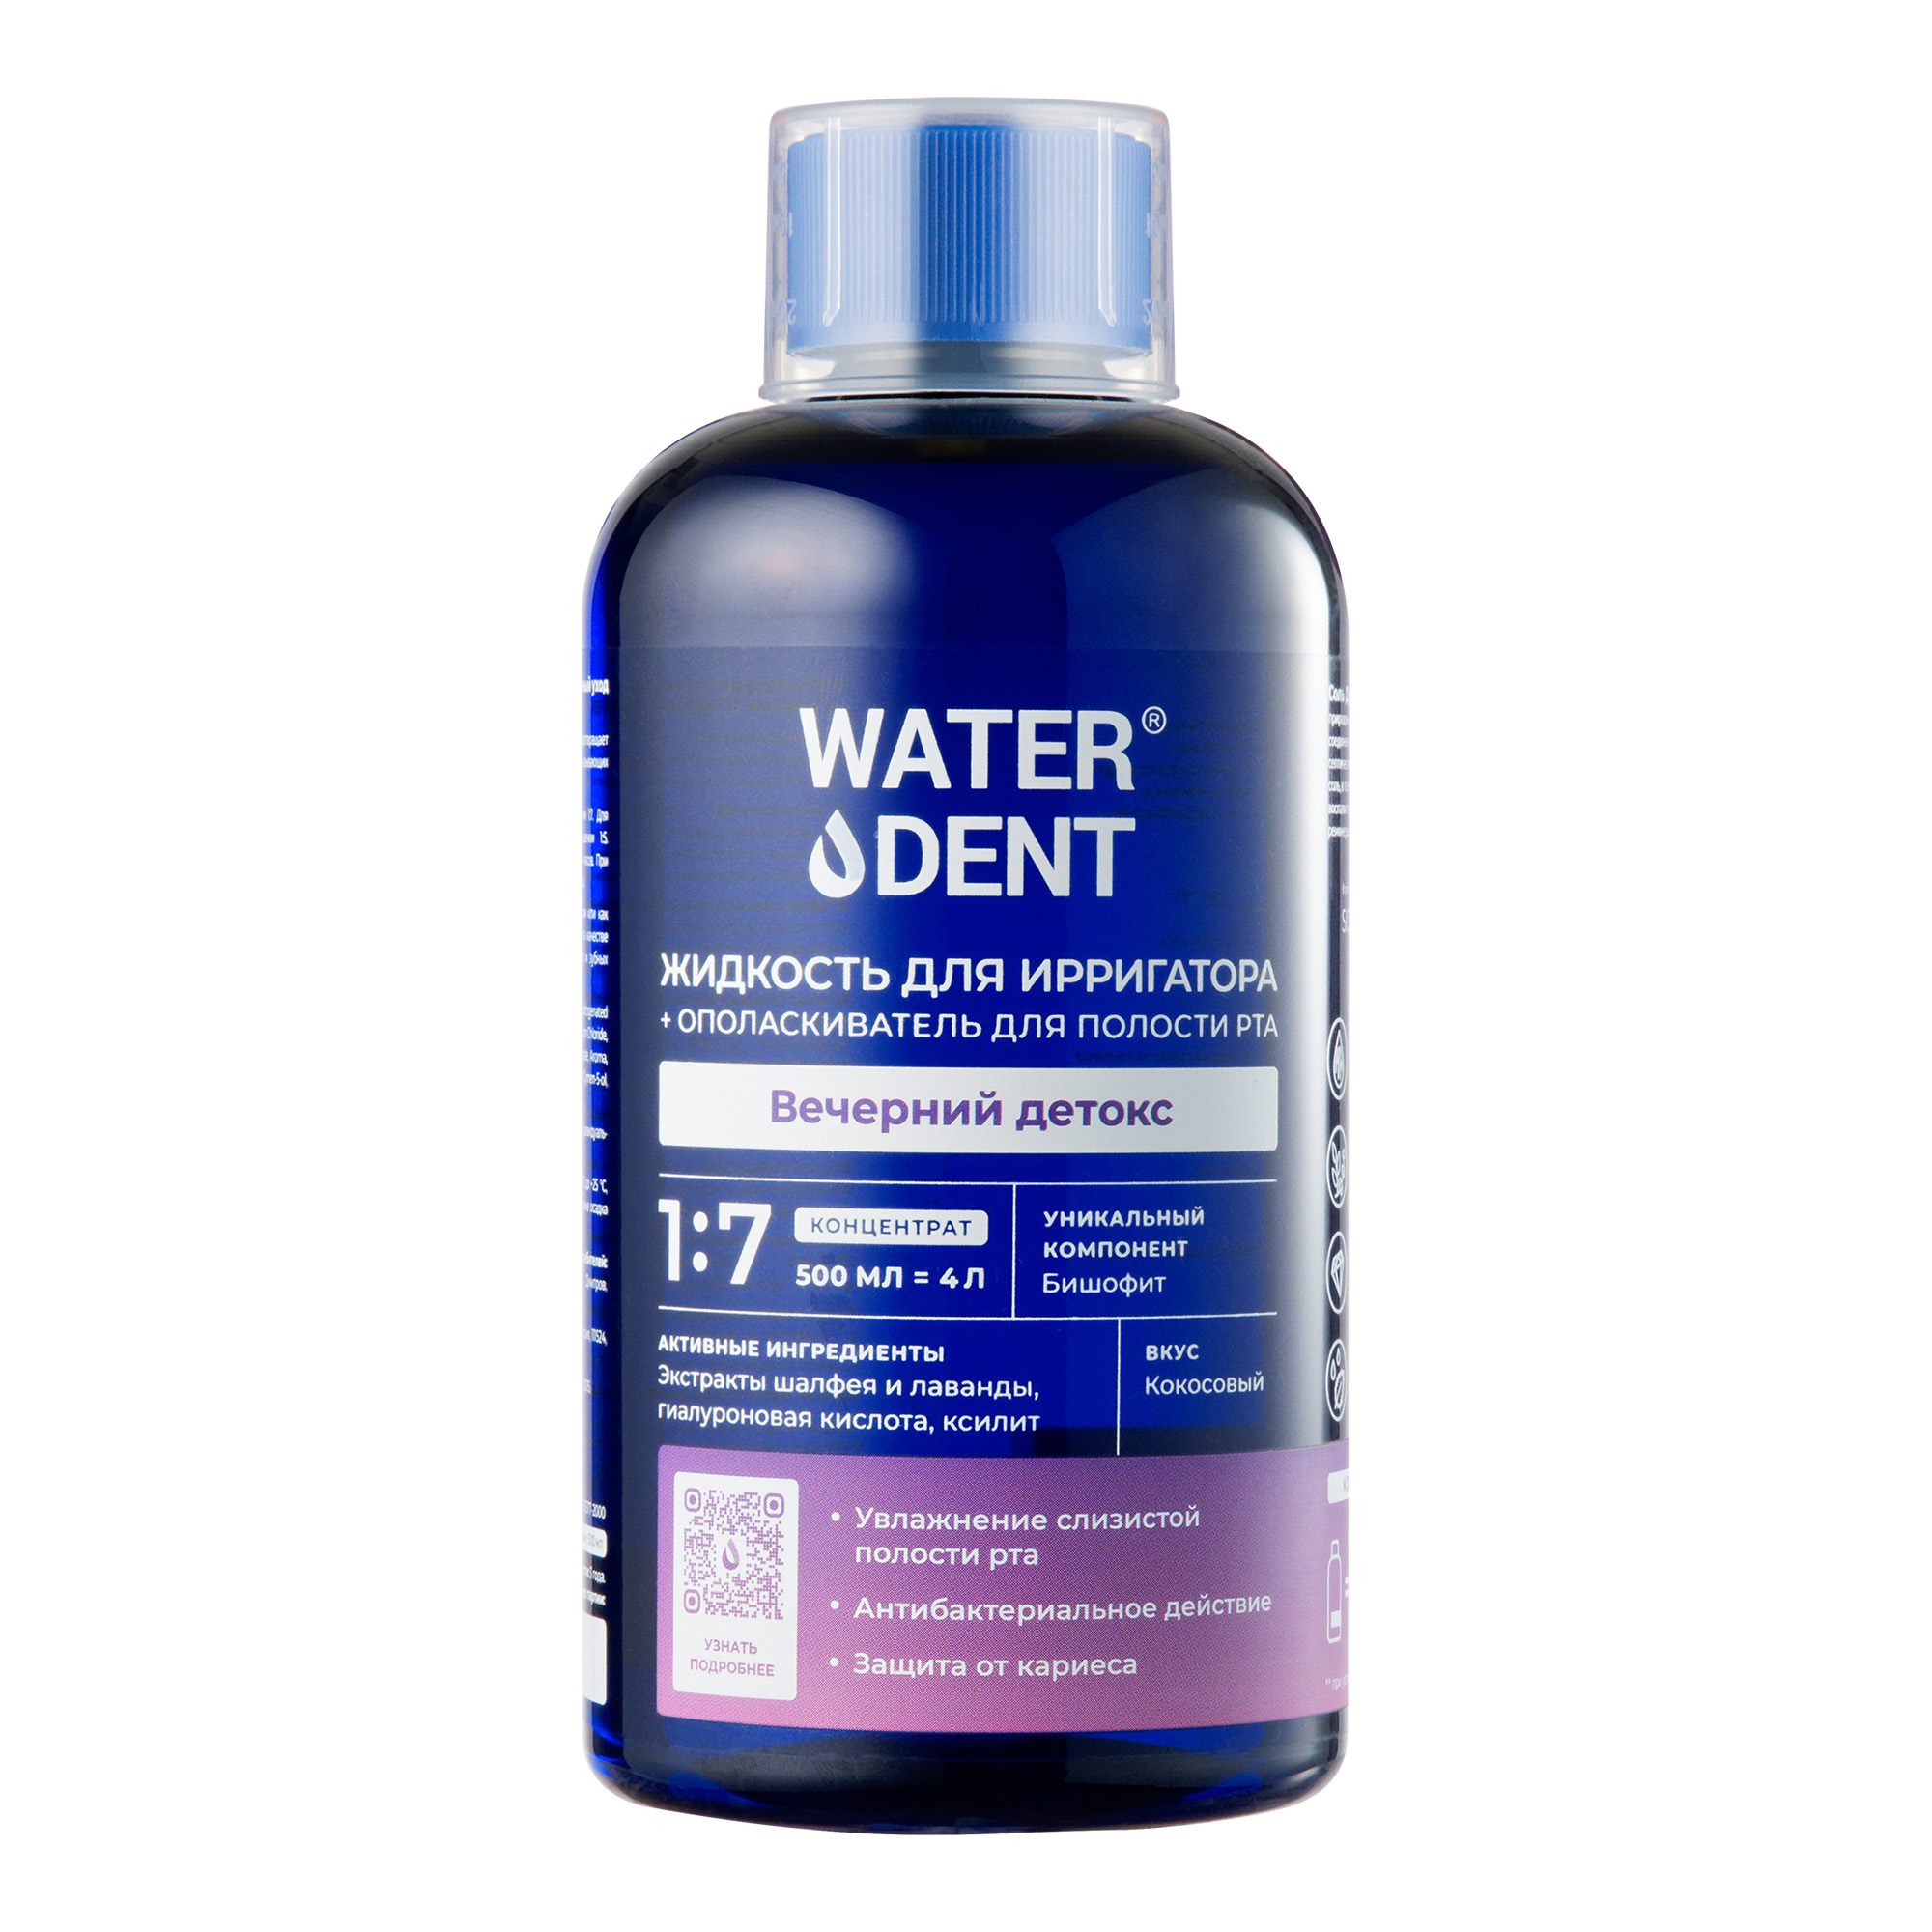 Waterdent, жидкость для ирригатора Вечерний детокс Кокос, флакон 500 мл waterdent жидкость для ирригатора утренний детокс 500 мл